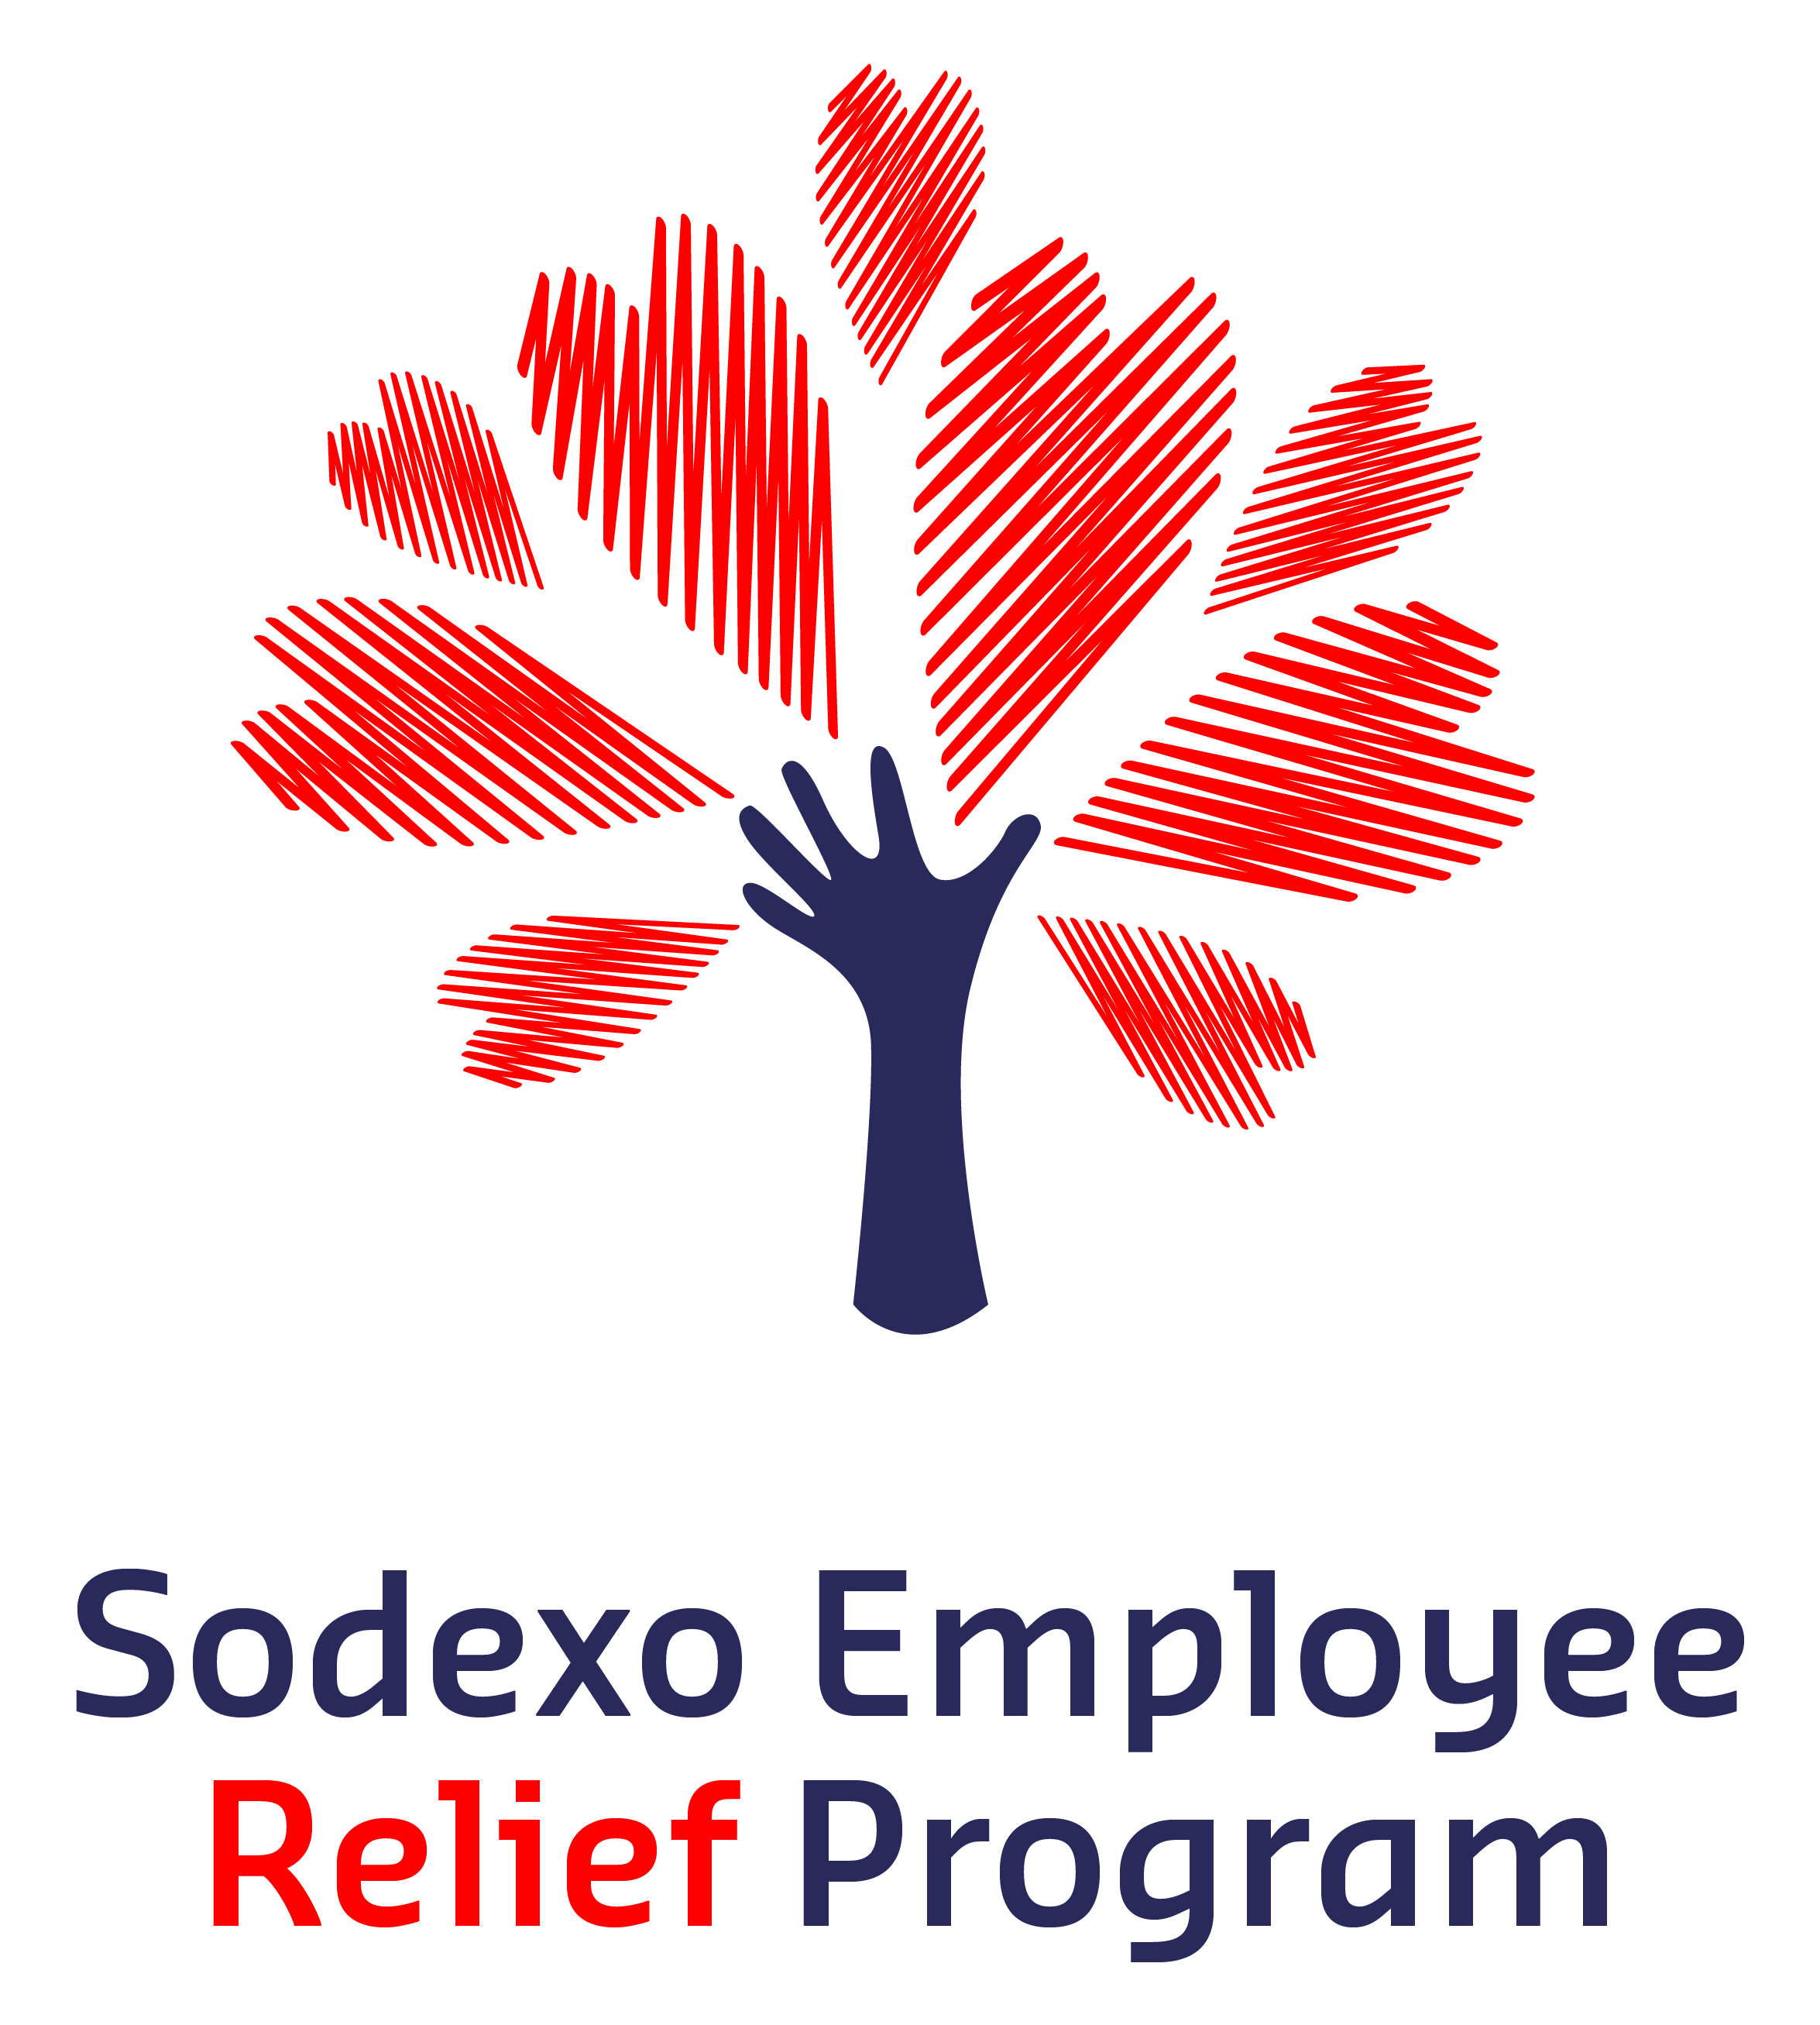 Sodexo Employee Relief Program logo